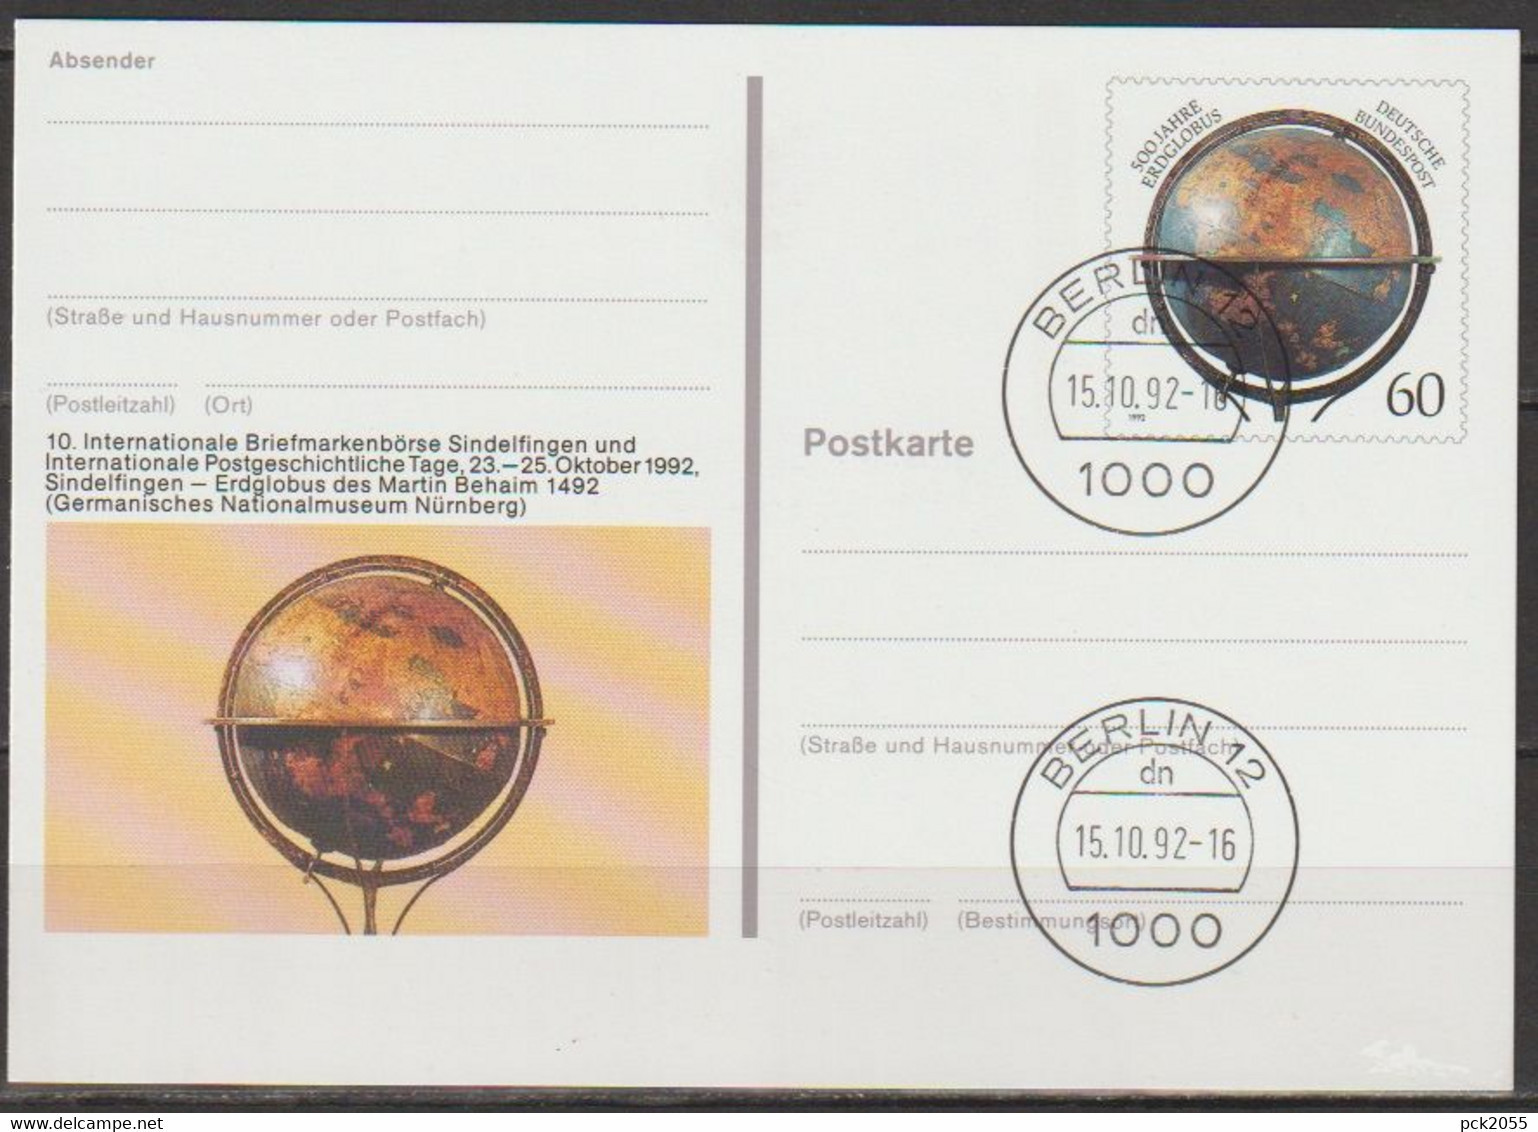 BRD Ganzsache1992 PSo29 Briefmarkenbörse Sindelfingen Ersttagesstempel 15.10.92 Berlin (d839)günstige Versandkosten - Postkarten - Gebraucht